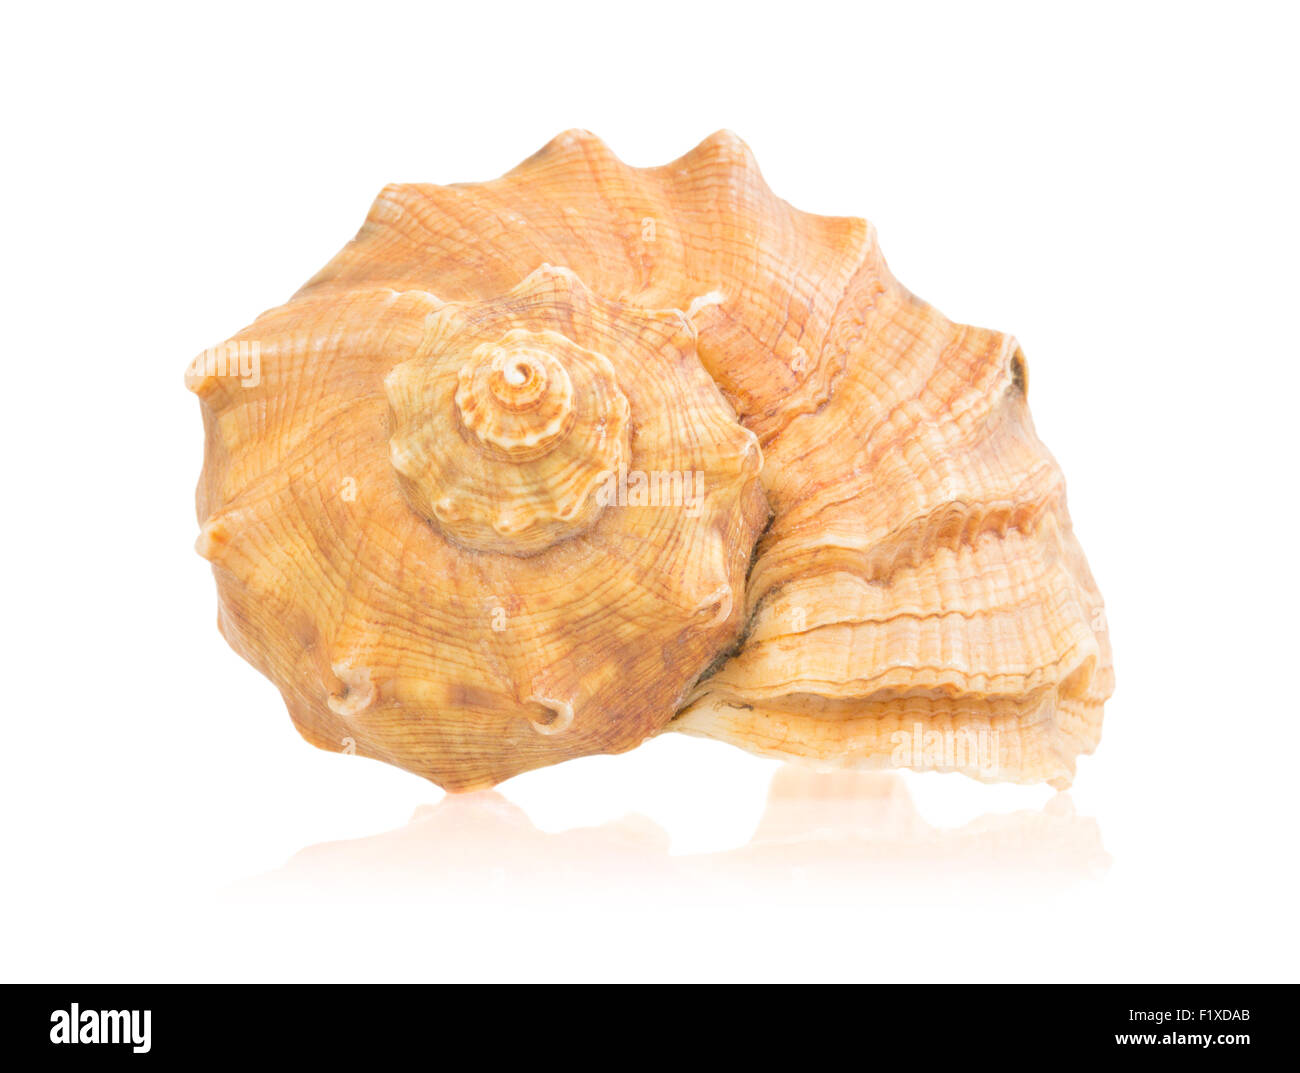 Seashell isolated on white background. Stock Photo